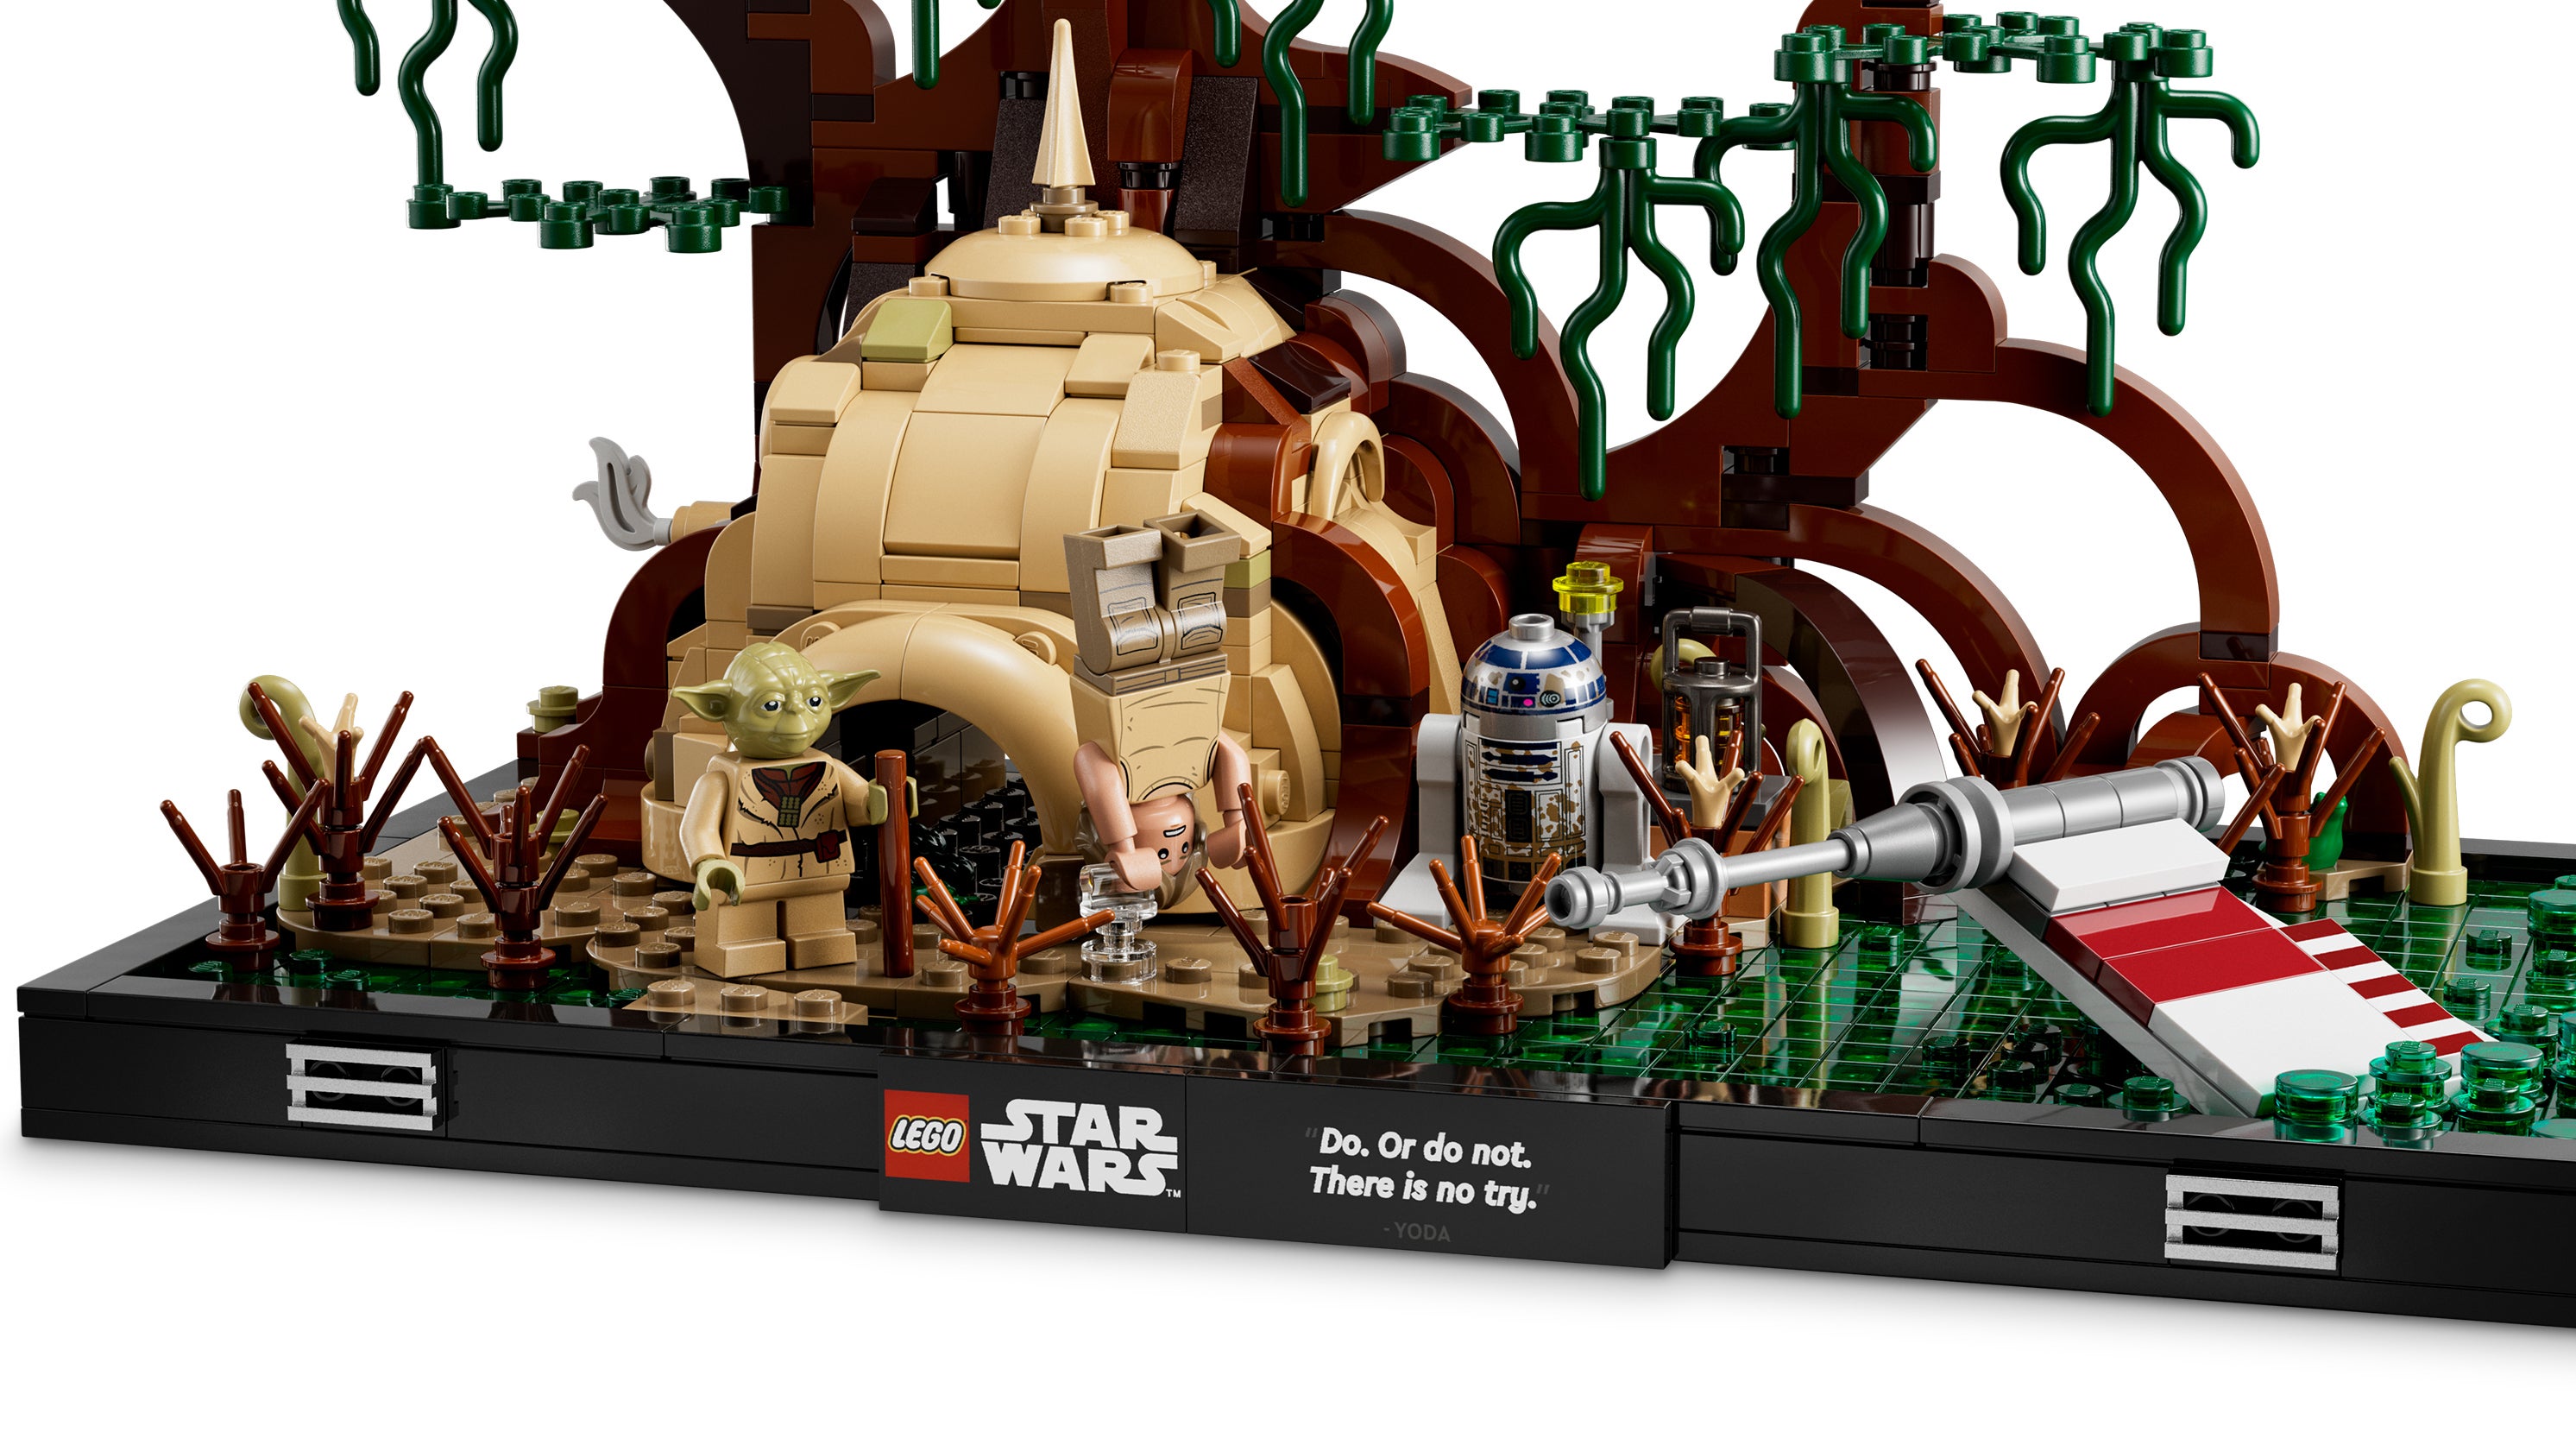 Imagem para LEGO revela 3 dioramas de Star Wars com cenas icónicas